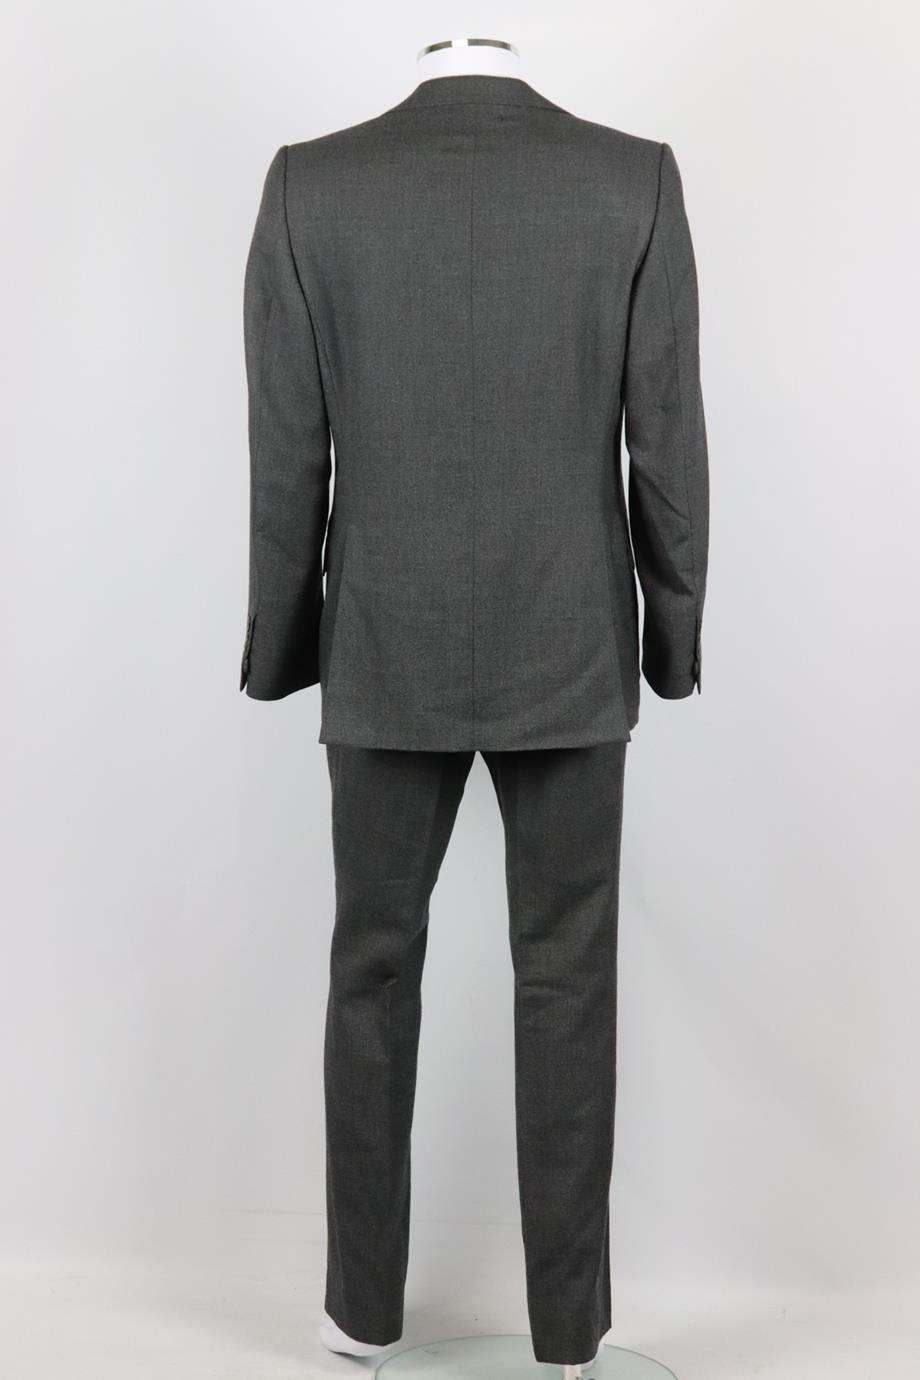 Yves Saint Laurent Men's Wool Two Piece Suit It 50 Uk/us Chest 40 1